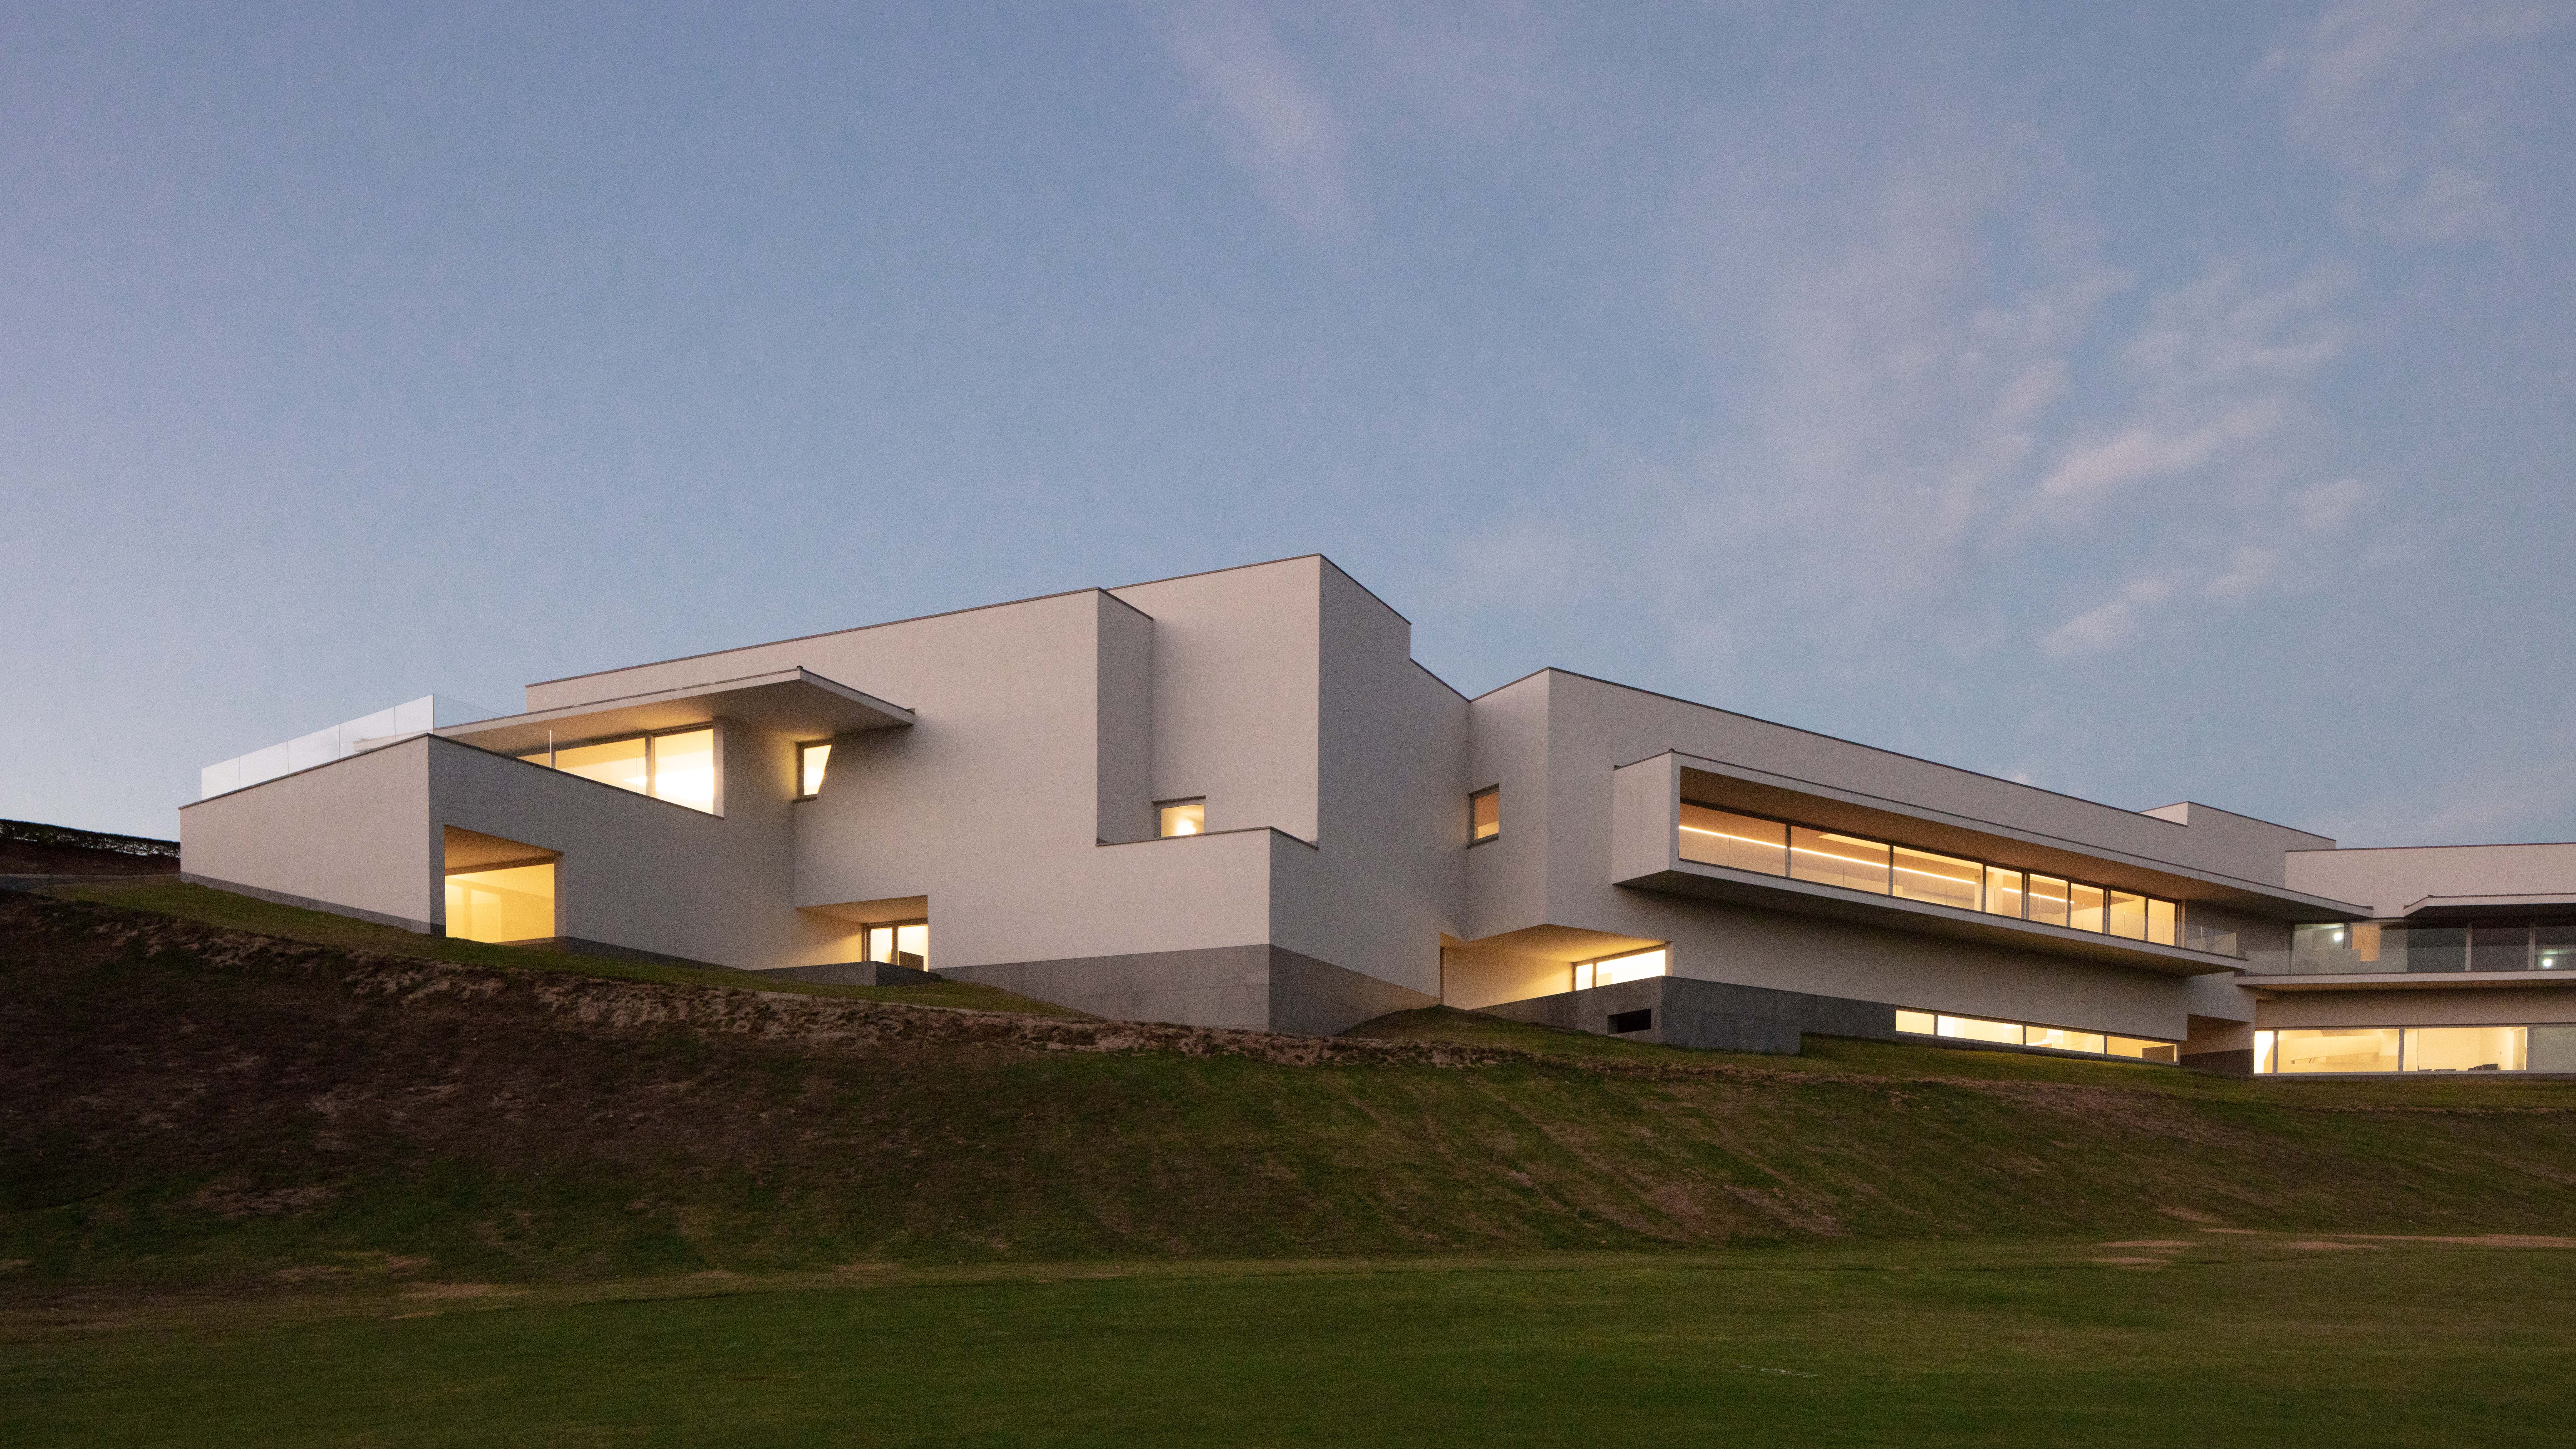 台豐高爾夫俱樂部擁有兩座由普立茲克建築獎得主葡萄牙籍大師阿爾瓦羅‧西薩（Álvaro Siza）及其夥伴建築師卡洛斯‧卡斯達內拉（Carlos Castanheira）所設計之會所建築，這二座結合球場地形所設計的地景建築，不但為台灣高爾夫球界帶來關於「休憩文化」的全新綜合體驗，也為台灣建築界樹立了「與大地環境融合」的建築設計典範。